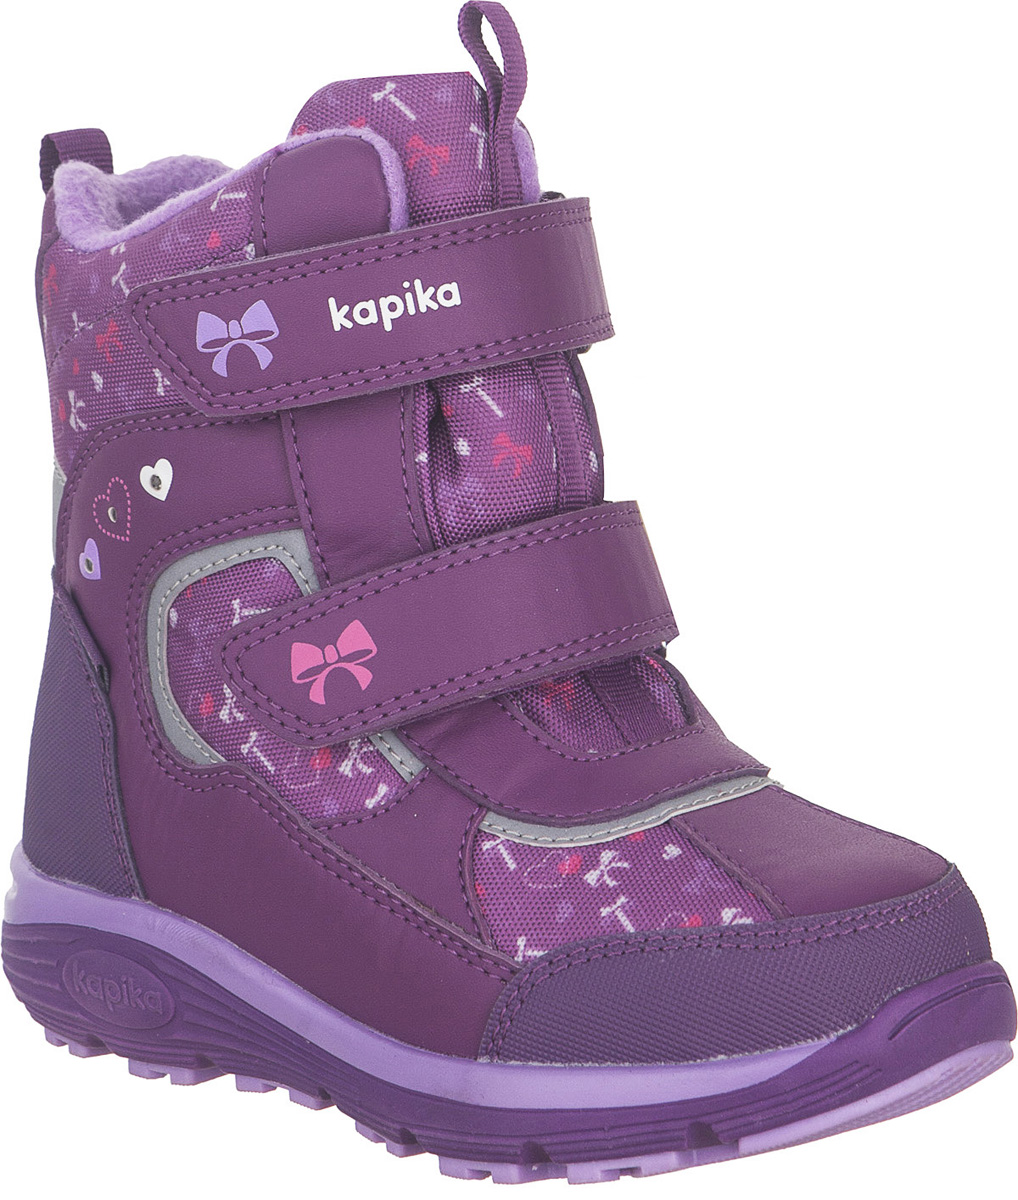 Ботинки для девочки Kapika KapiTEX, цвет: фиолетовый. 42258-2. Размер 32